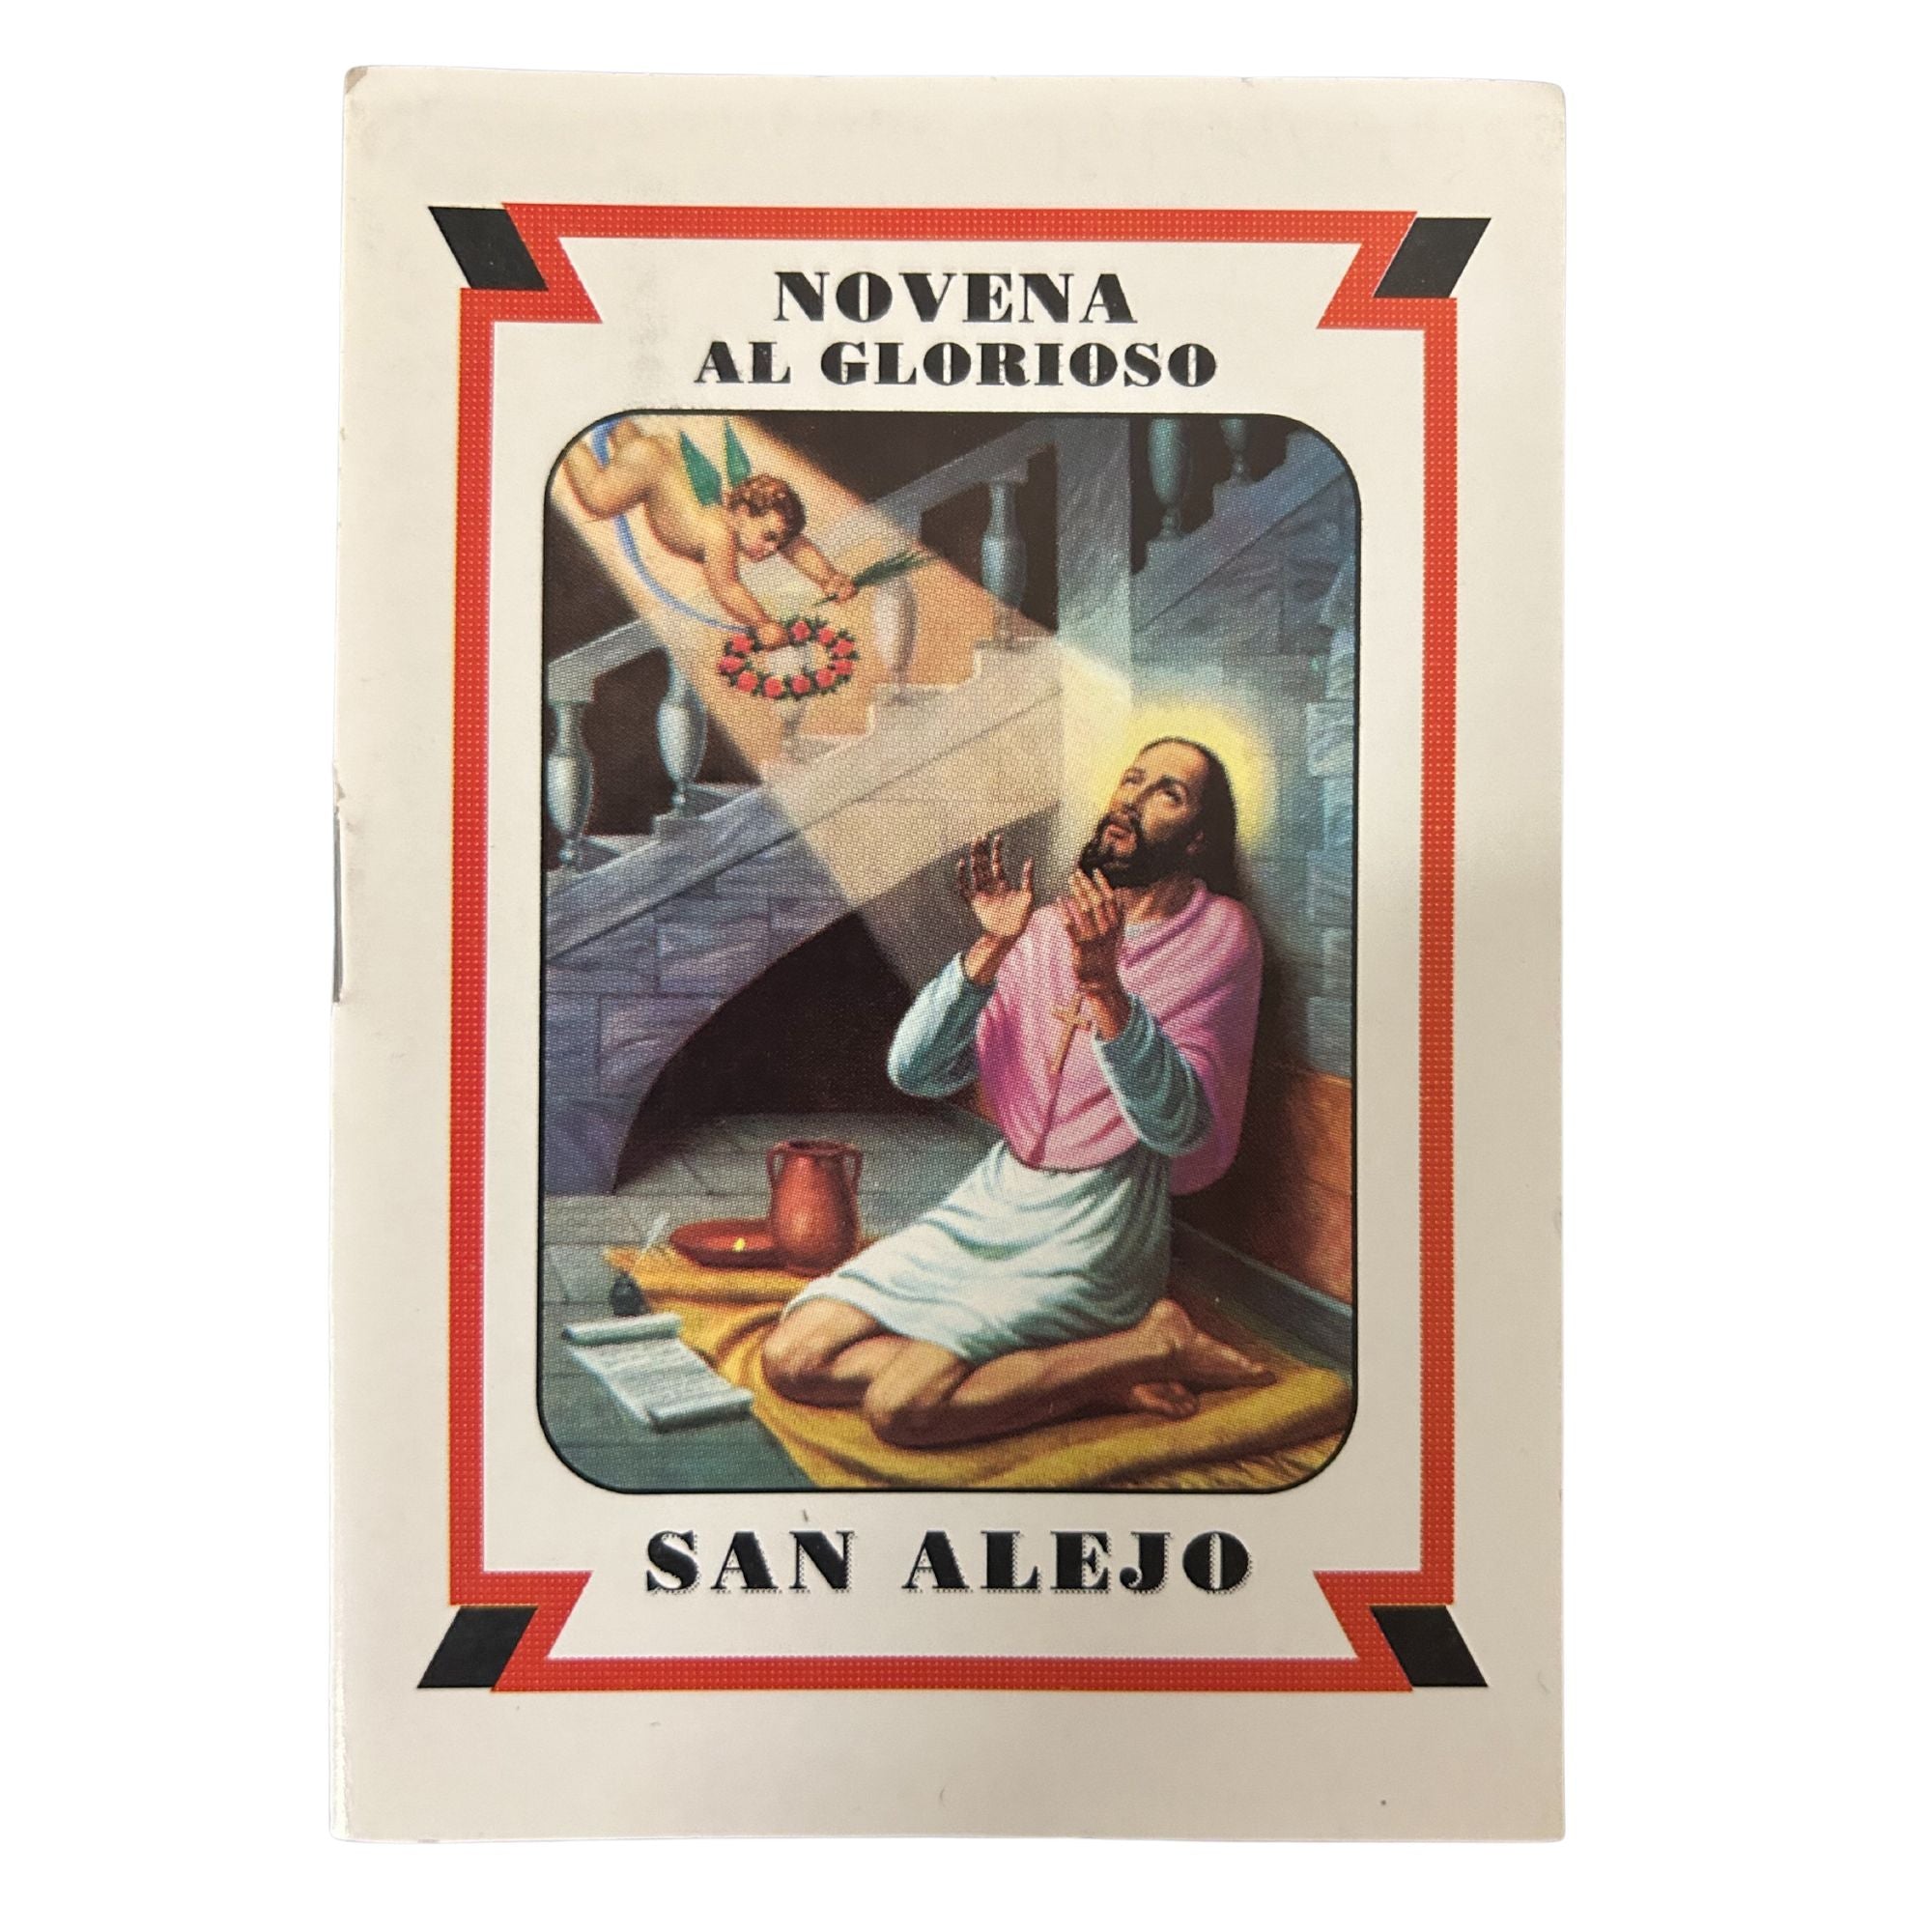 Novena - Al Glorioso San Alejo